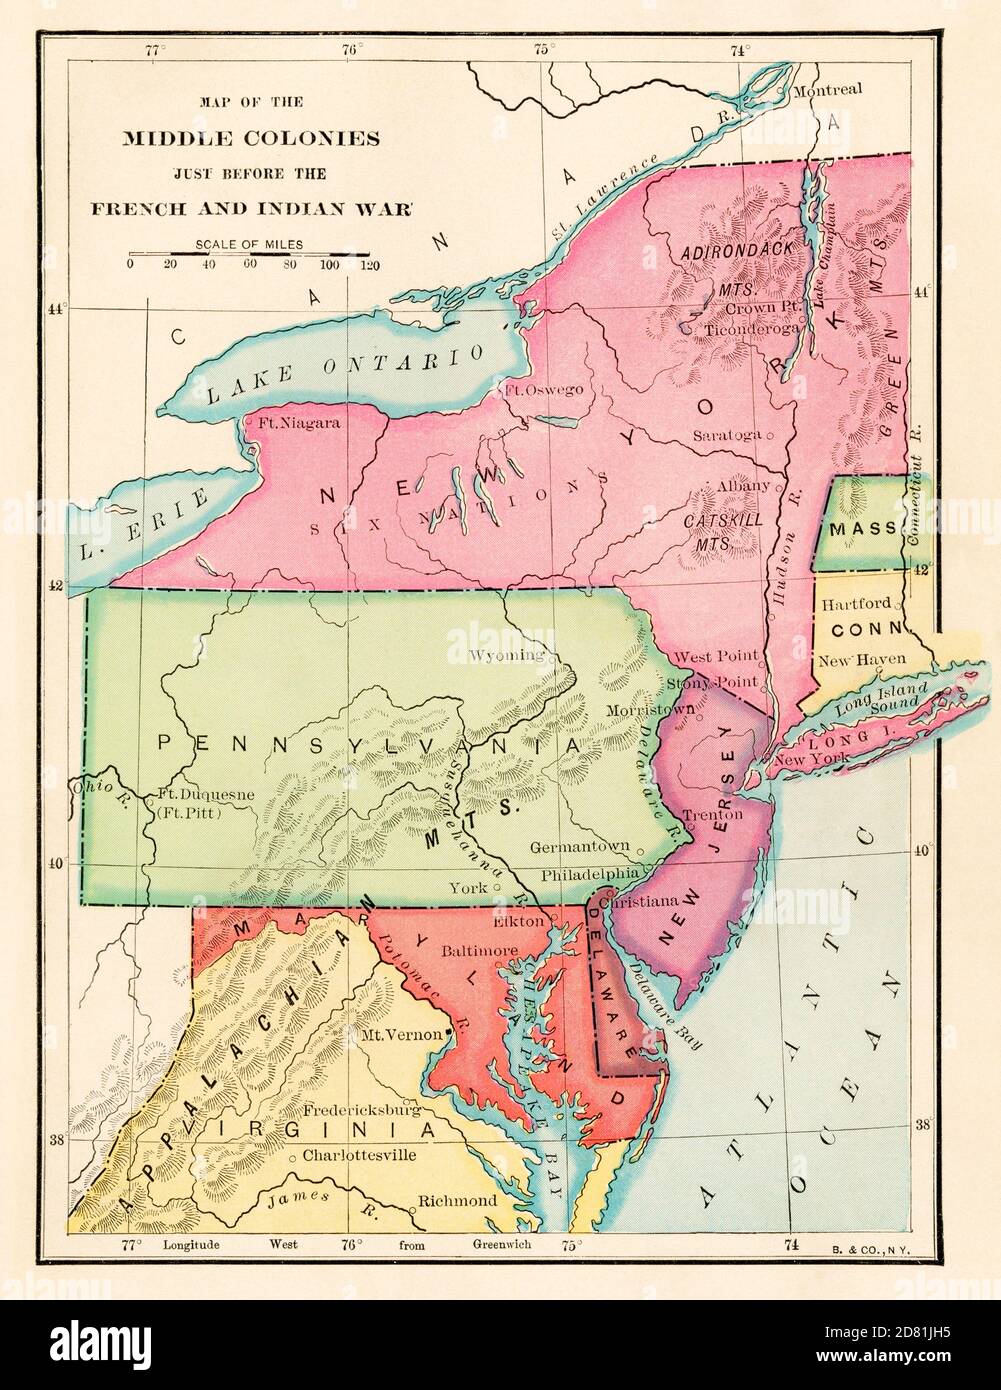 Mittlere Kolonien kurz vor dem Französisch & Indischen Krieg, 1750er Jahre. Farbhalfton Stockfoto